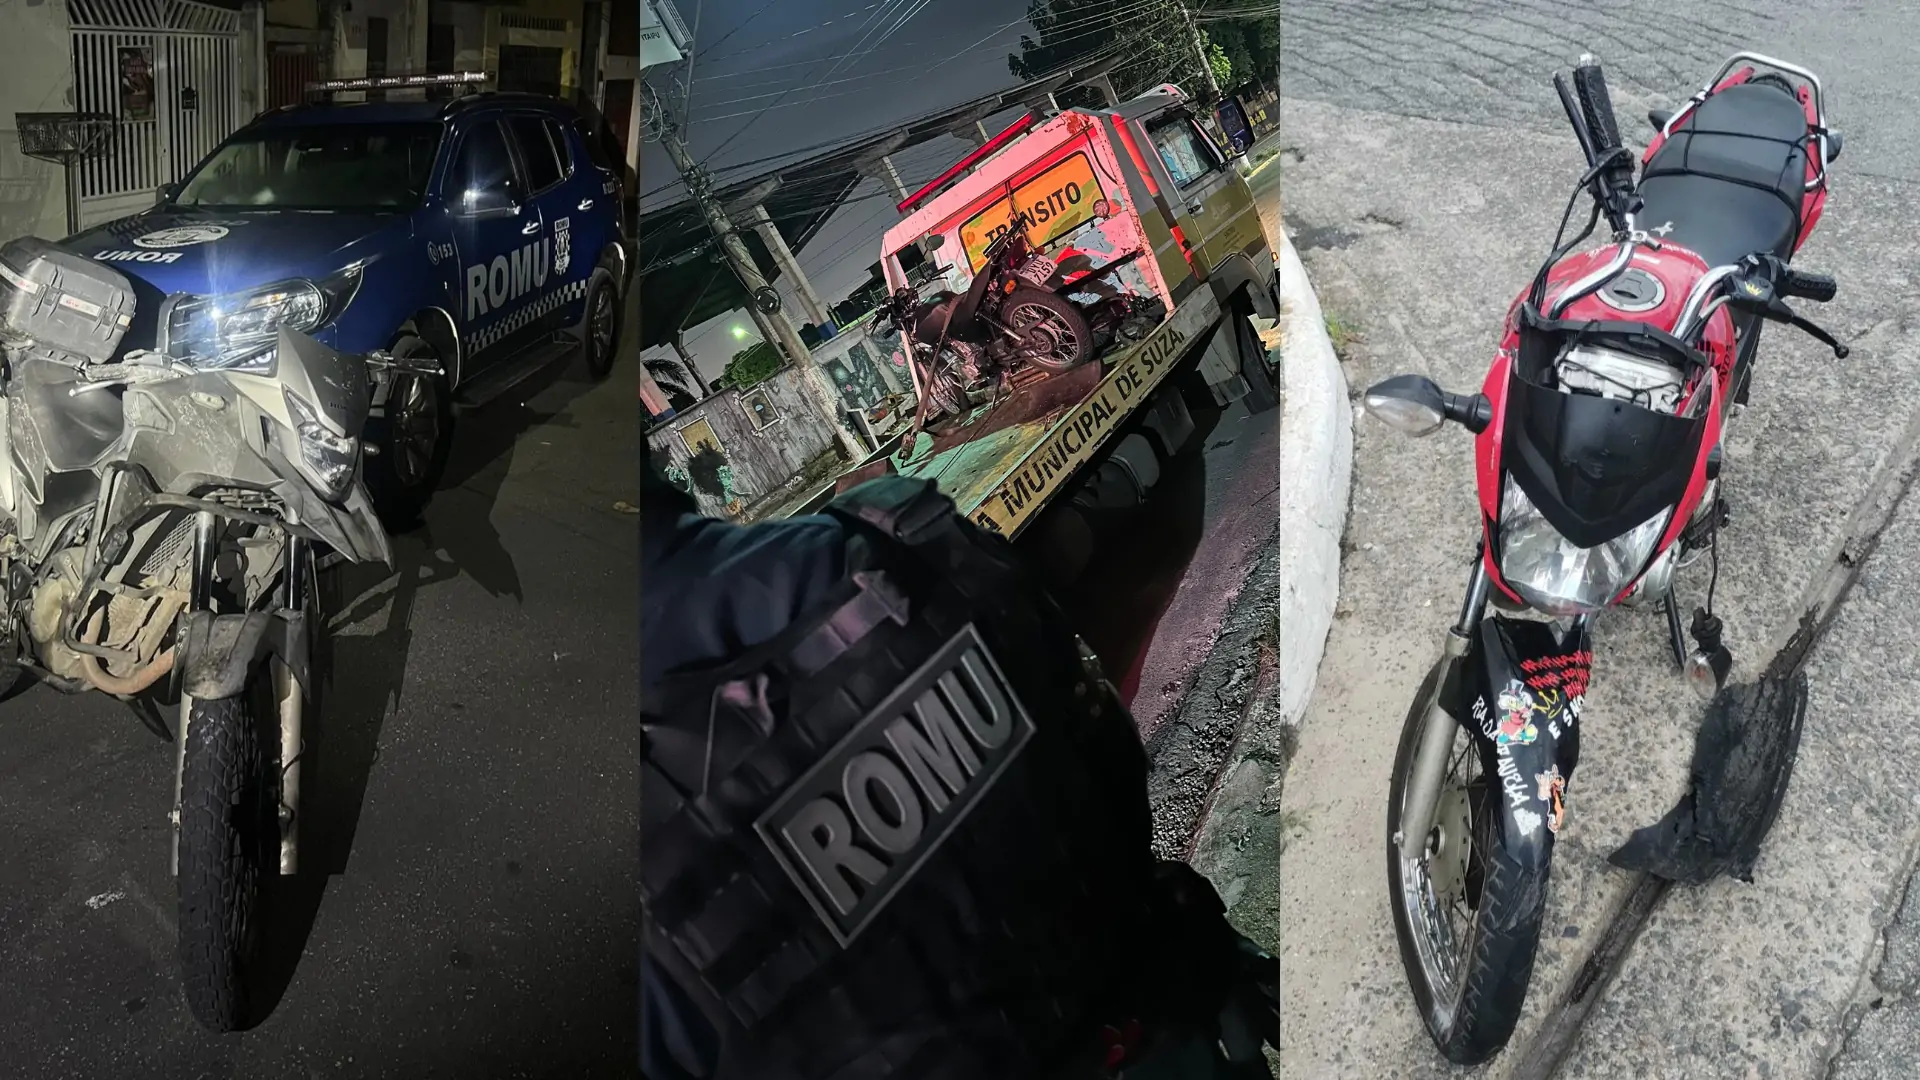 GCM de Suzano aborda motociclistas ‘grau’ e apreende veículos